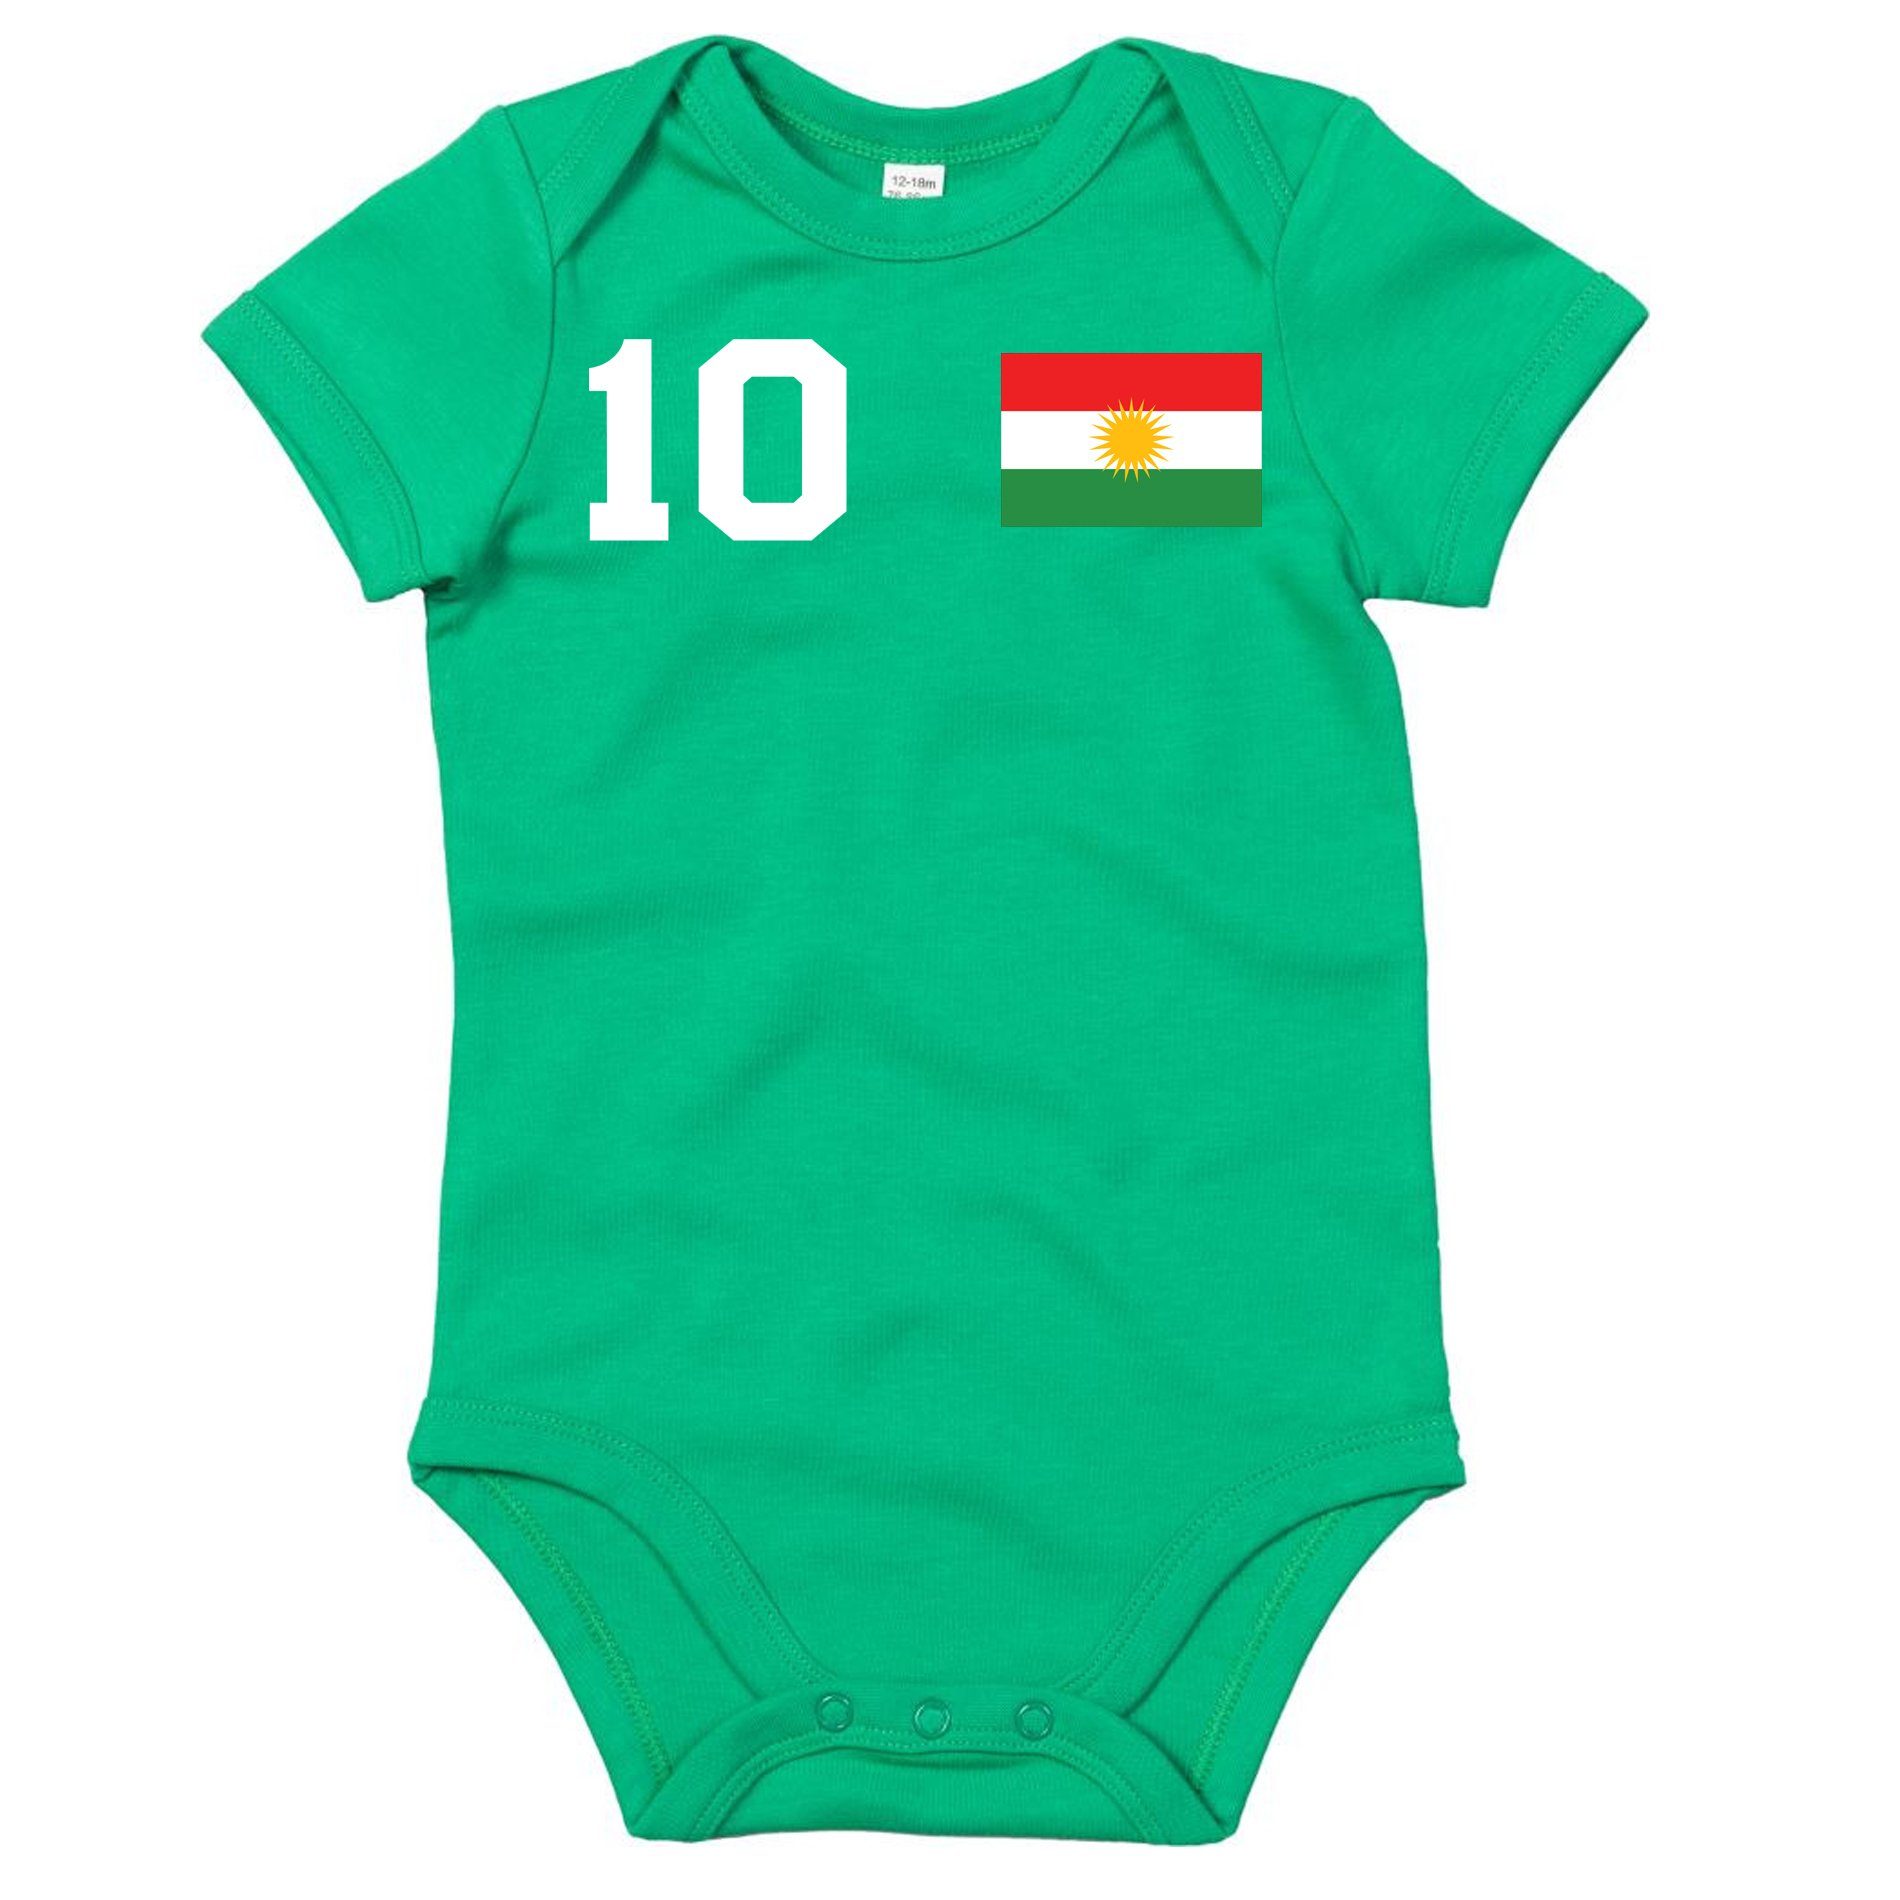 Trikot & Fußball Strampler Sport Fan Weiß/Grün-Weiß/Grün Brownie Meister WM Blondie Baby Kinder Kurdistan